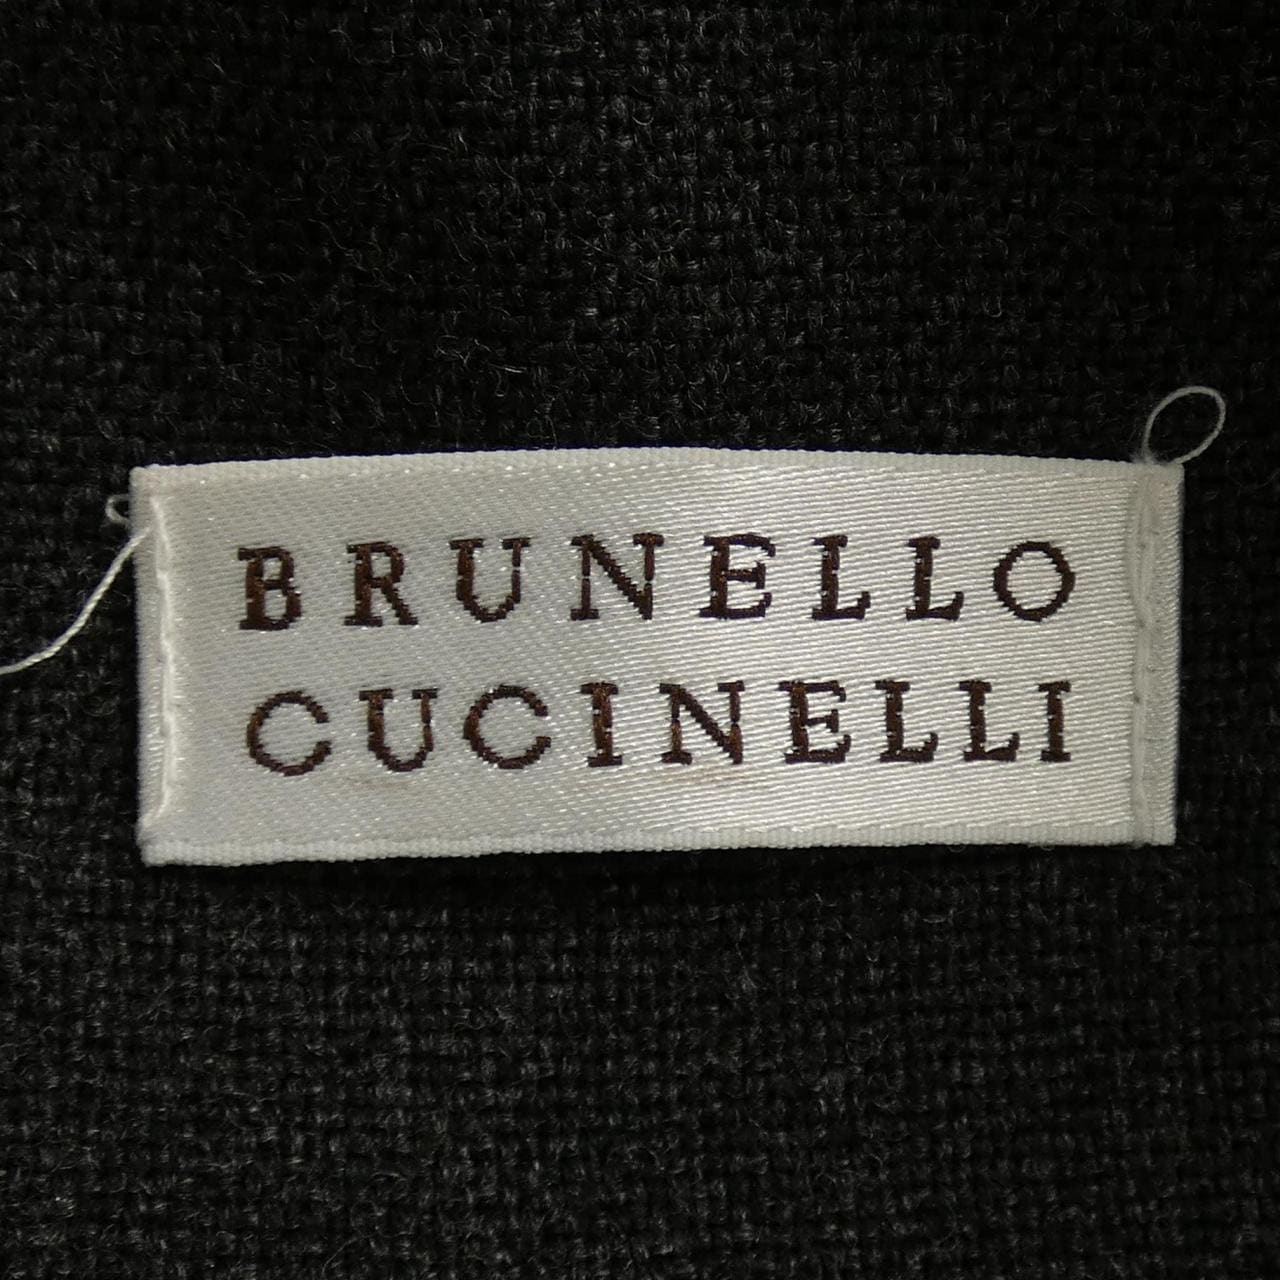 BRUNELLO CUCINELLI CUCINELLI skirt